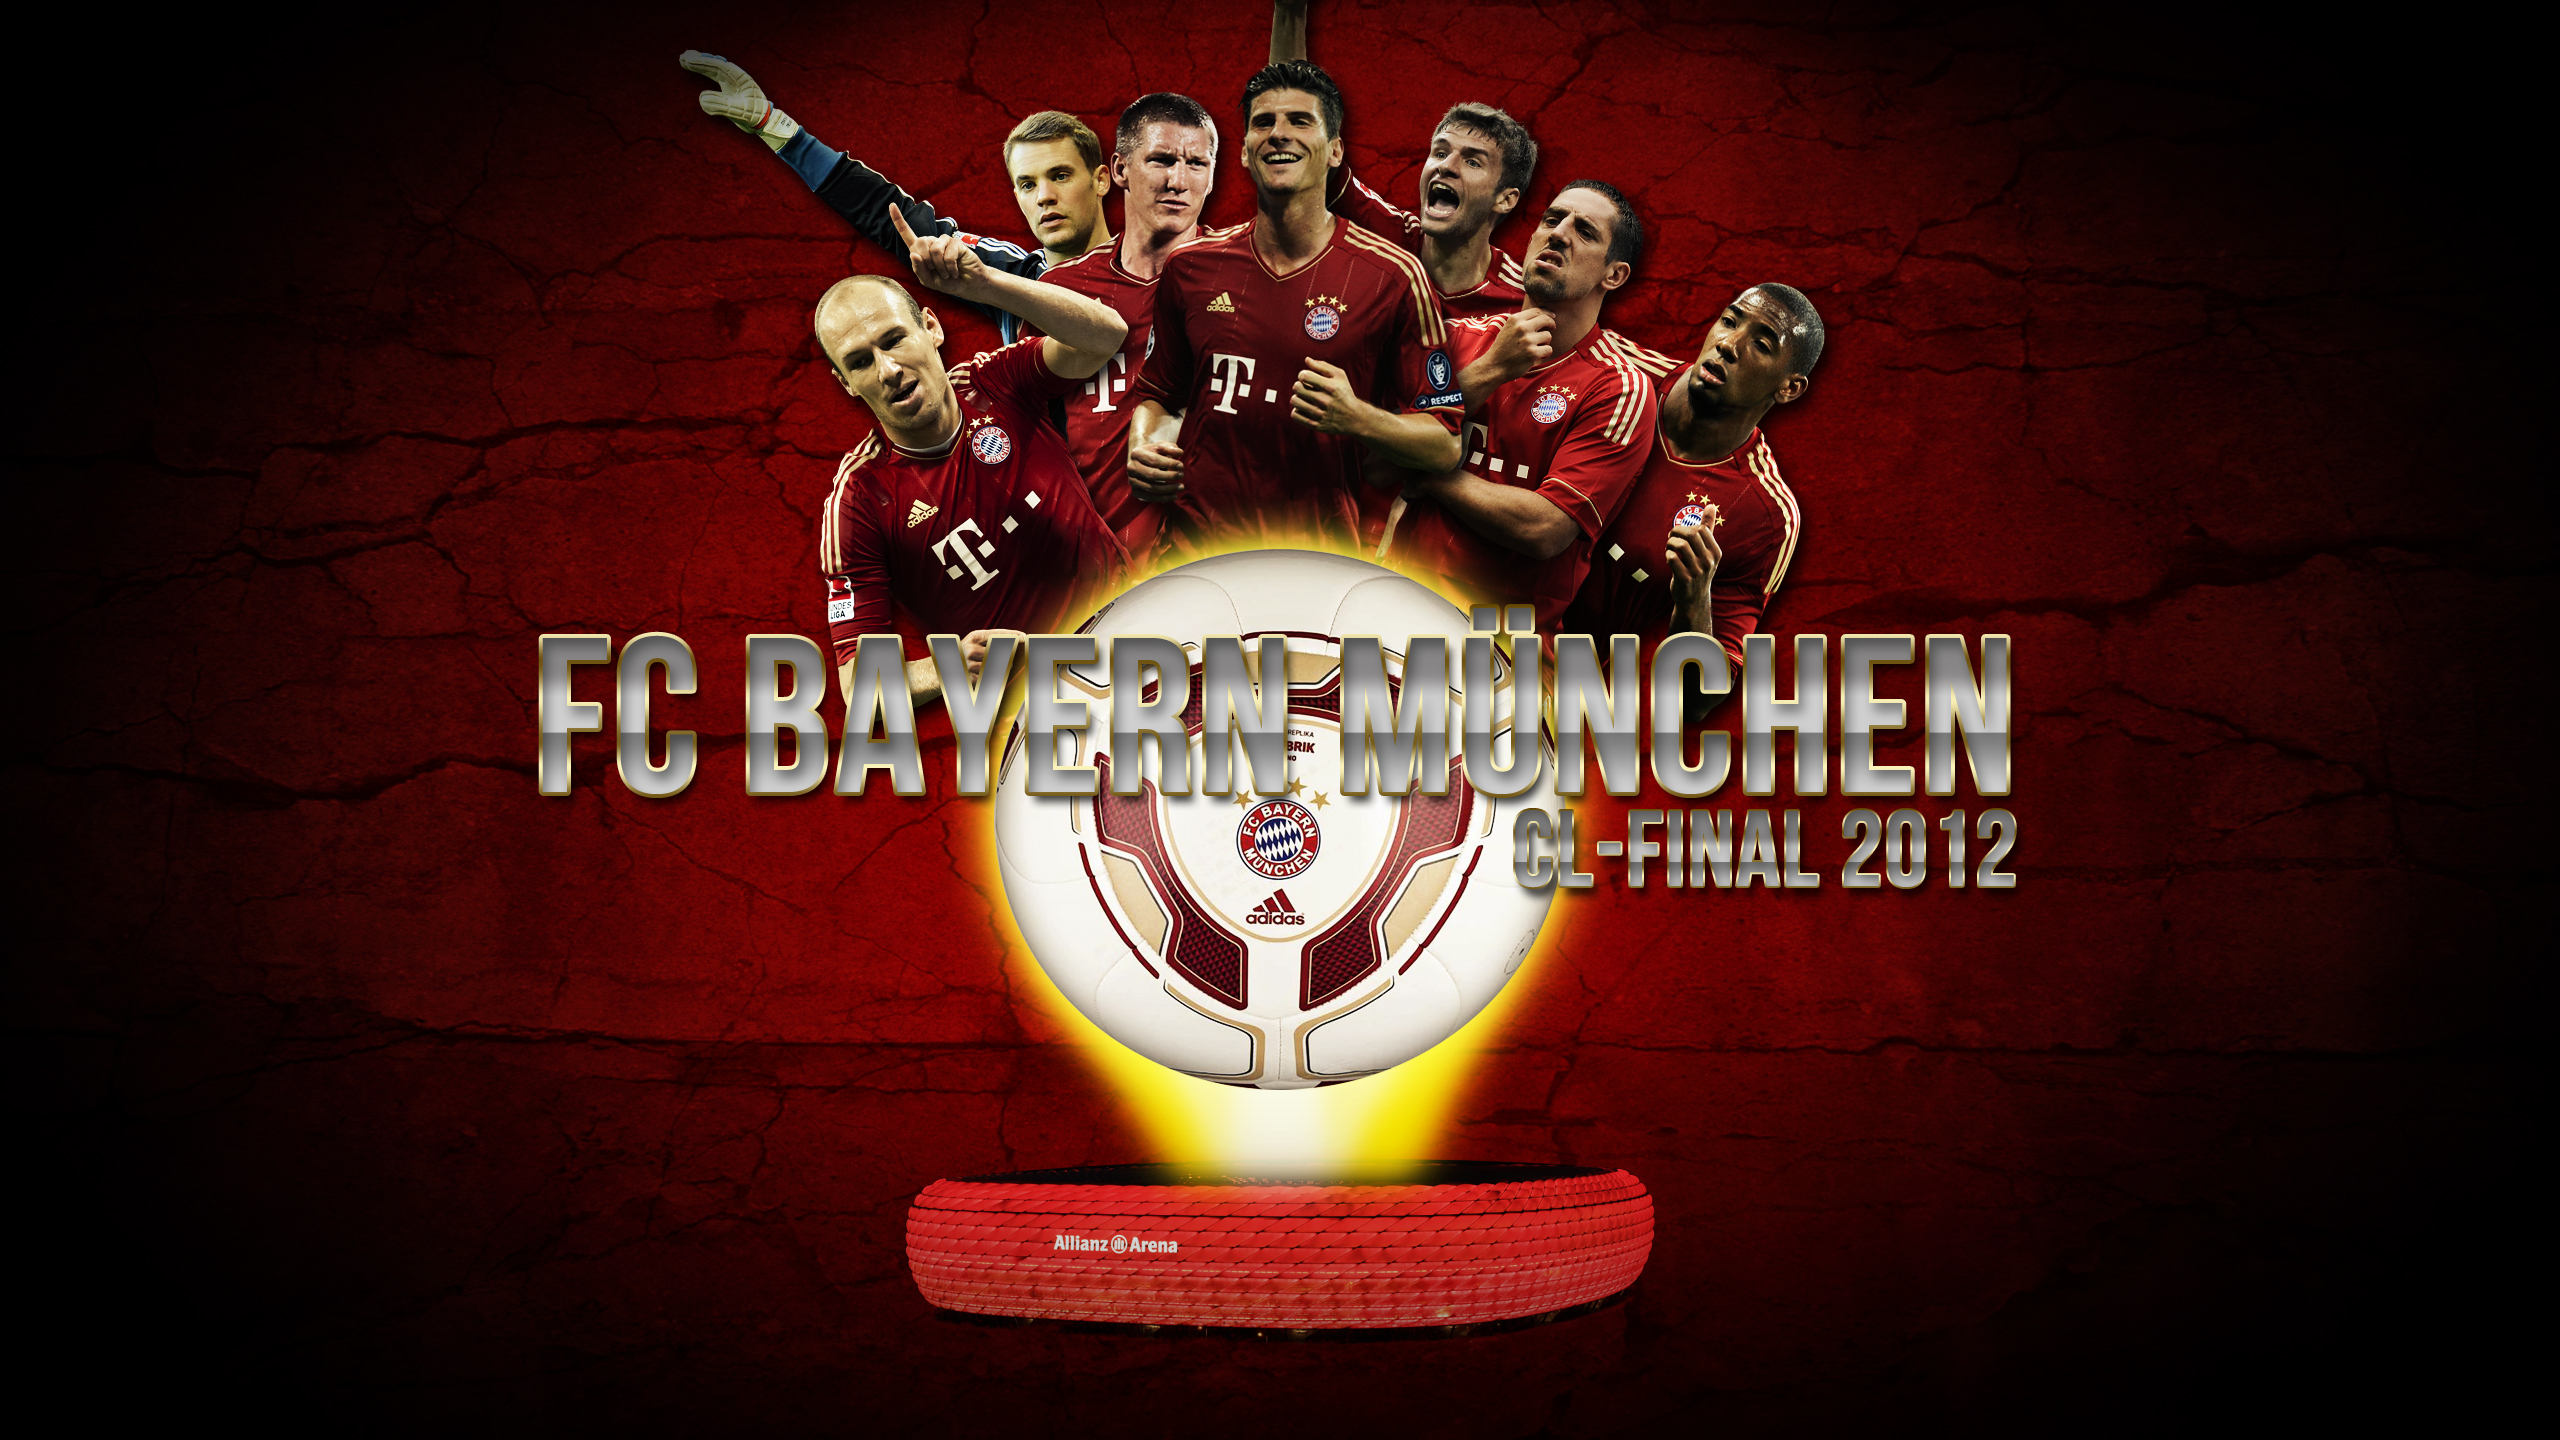 FC Bayern Munich Wallpaper JPG und PSD by Wybi on DeviantArt